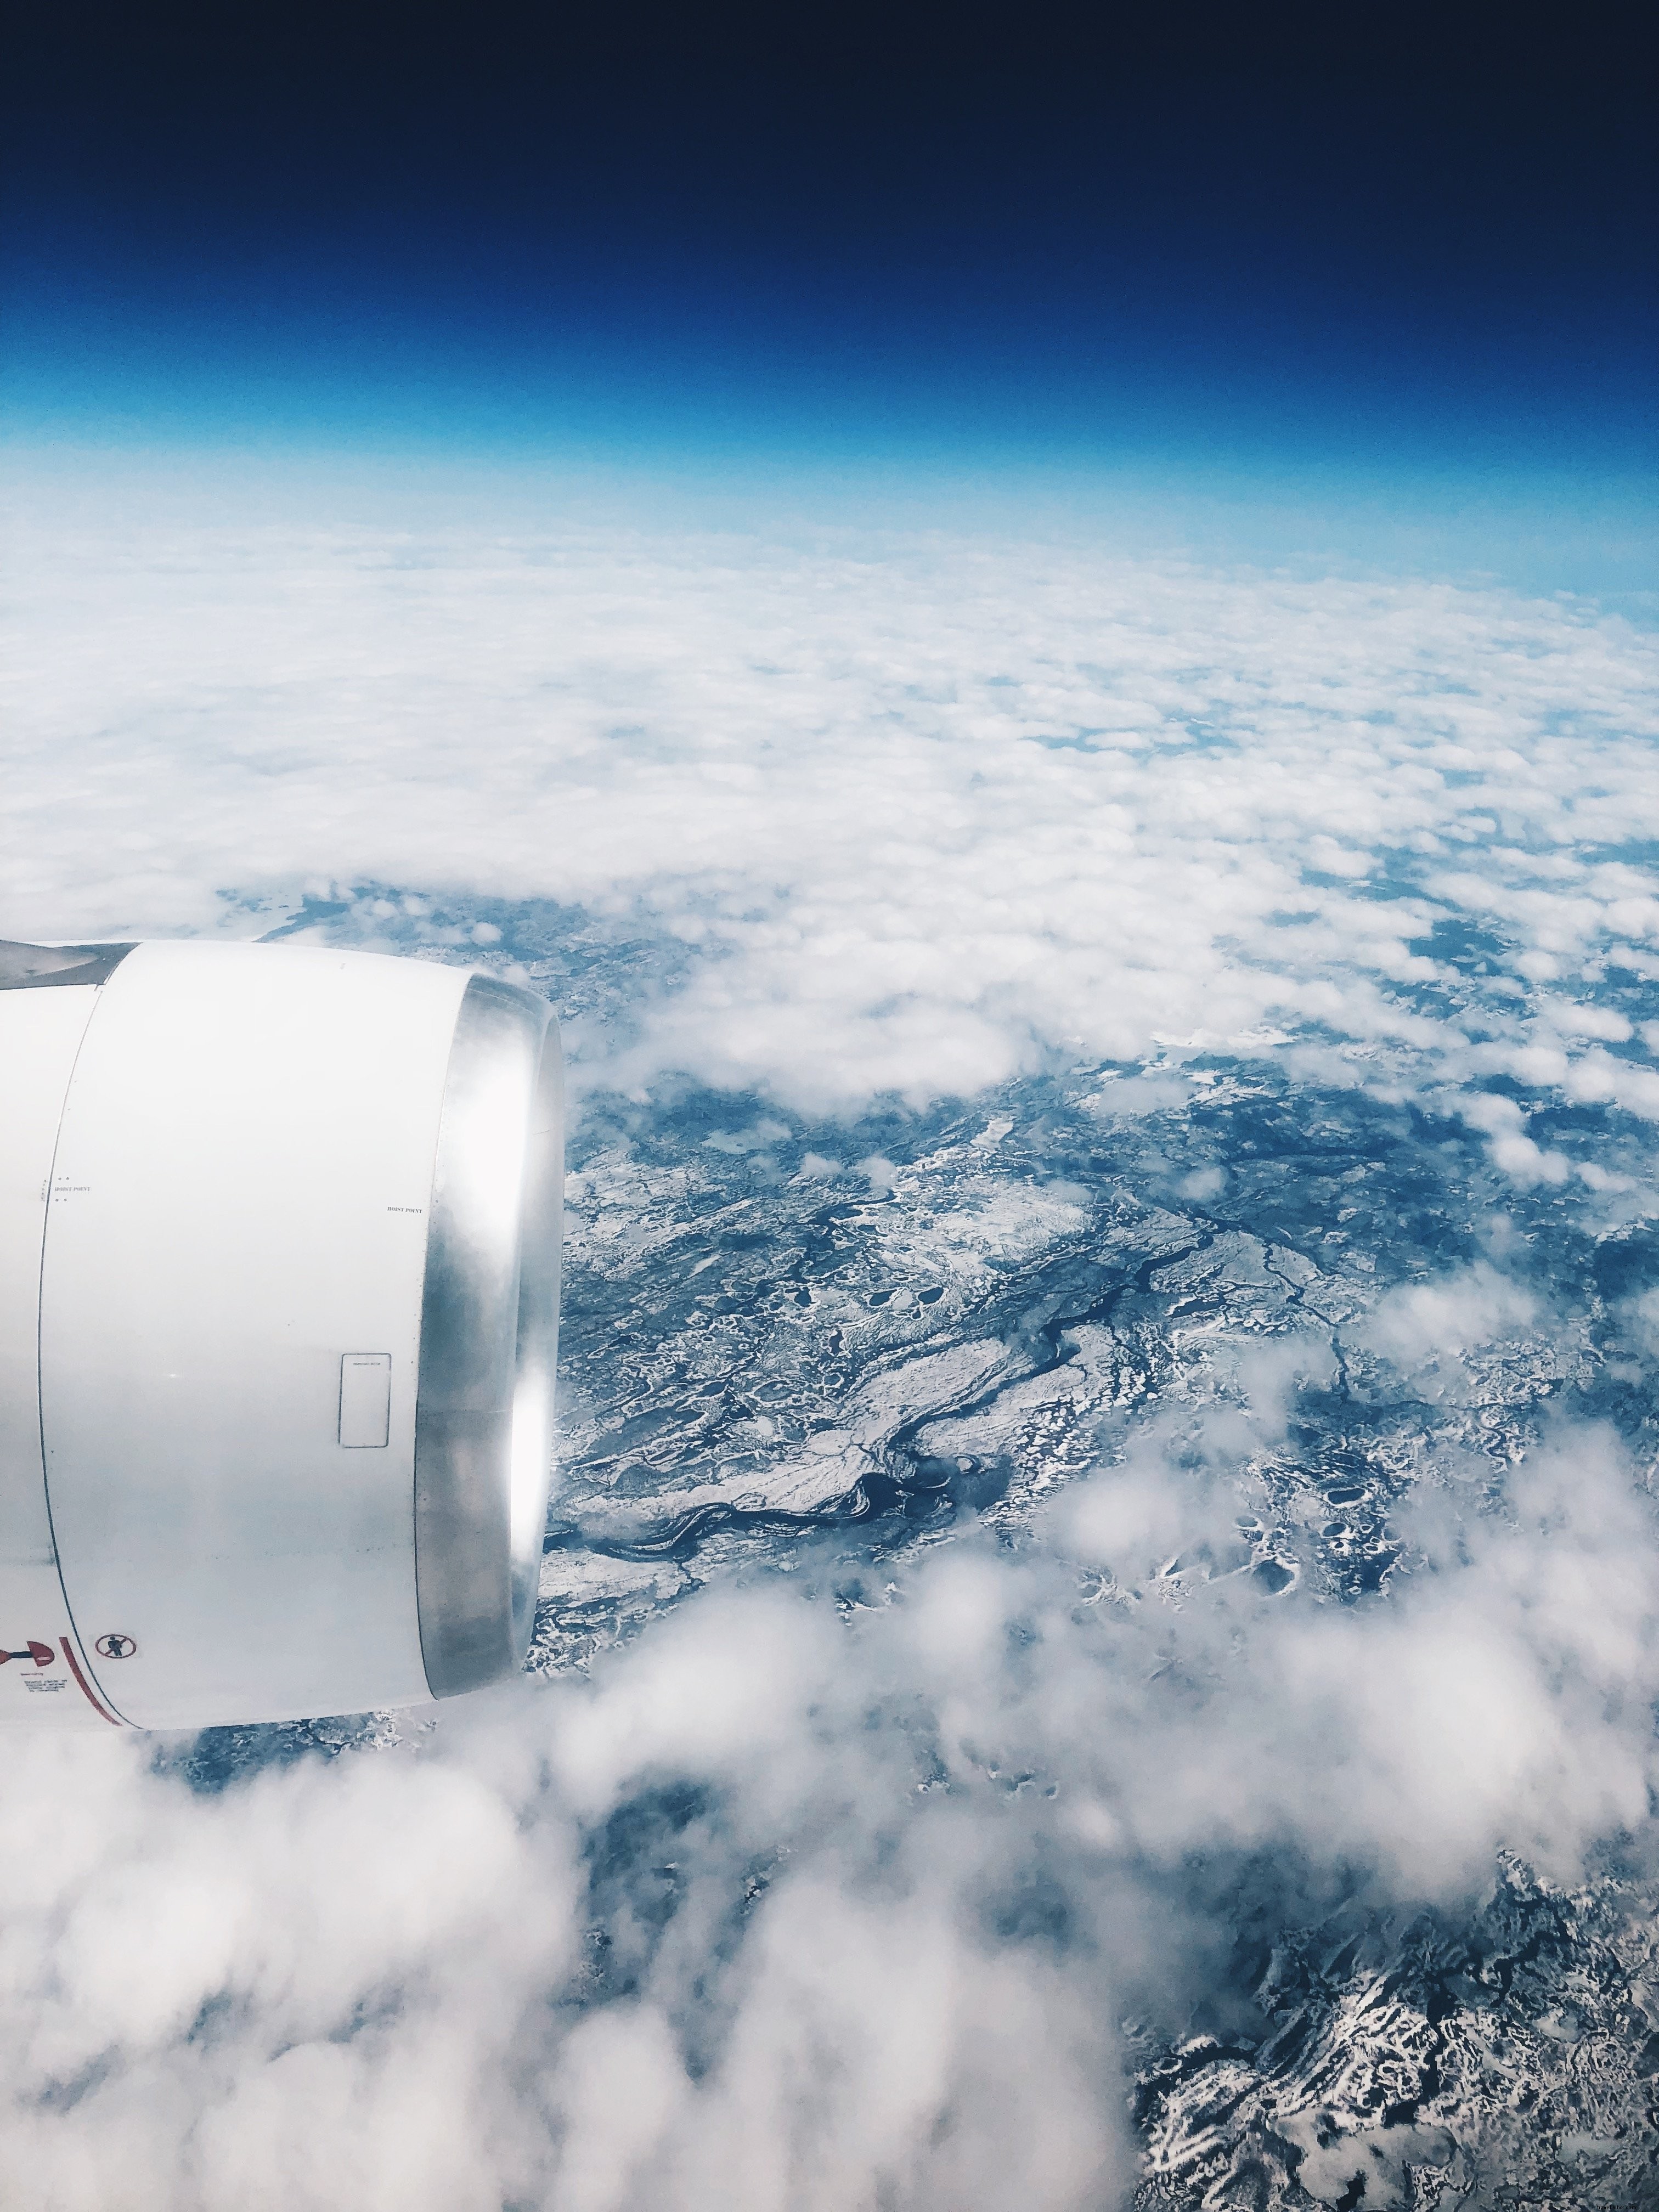 Vista desde la ventana del avión sobre los continentes nevados Foto